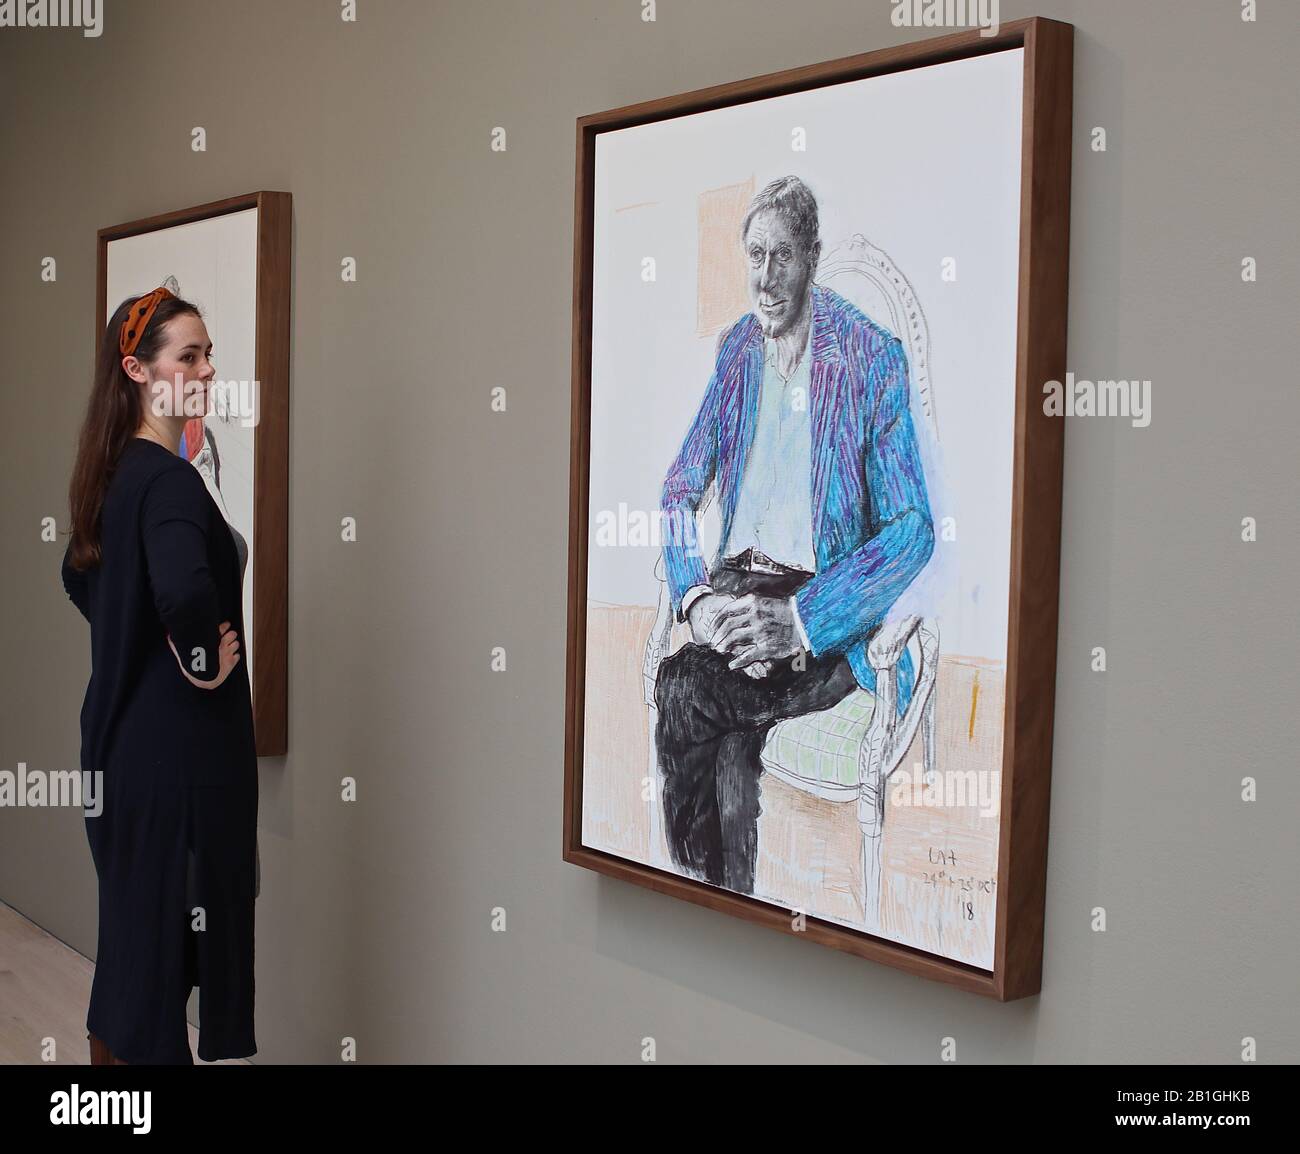 La exposición incluye 18 retratos sobre lienzo de amigos y asociados de Hockney , desde compañeros de artistas hasta conocidos músicos como Ed Sheeran y Bruno Mars . Pintado con una mezcla de crayón de carbón y acrílico sobre lienzo , las obras muestran la brillante delineación de Hockney y el uso distintivo de la línea y el color , además, cinco dibujos de tinta de color en papel, son los que presentan la hermana del artista , Margaret Hockney , y Scarlett Clark , La nieta de la musa de Hockney de largo tiempo Celia Birtwell. La exposición también incluye dos videos de perspectiva múltiple . Foto de stock